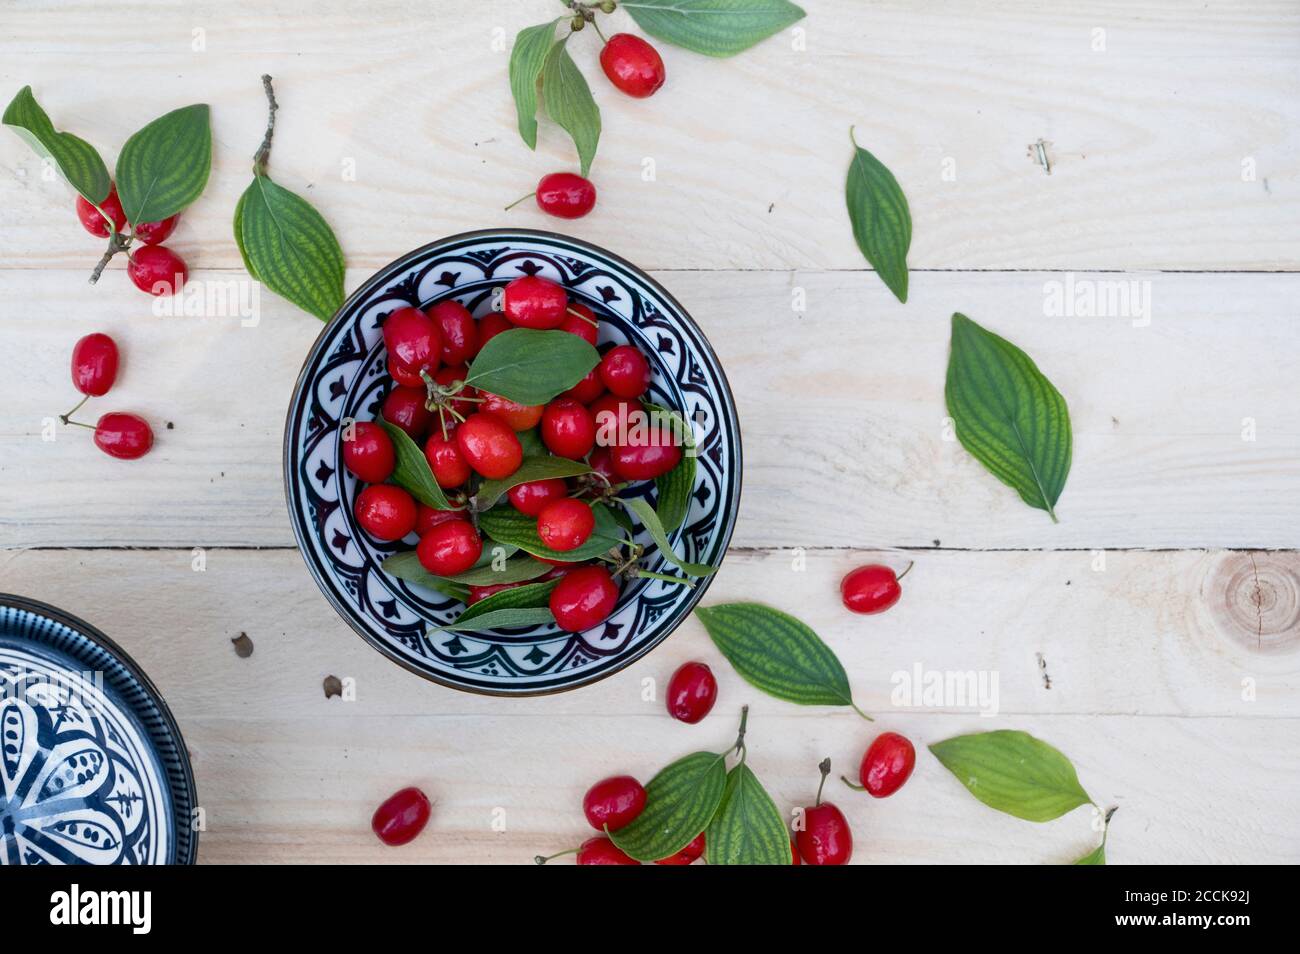 Bowl with leaves and fresh Cornelian cherries (Cornus mas) Stock Photo